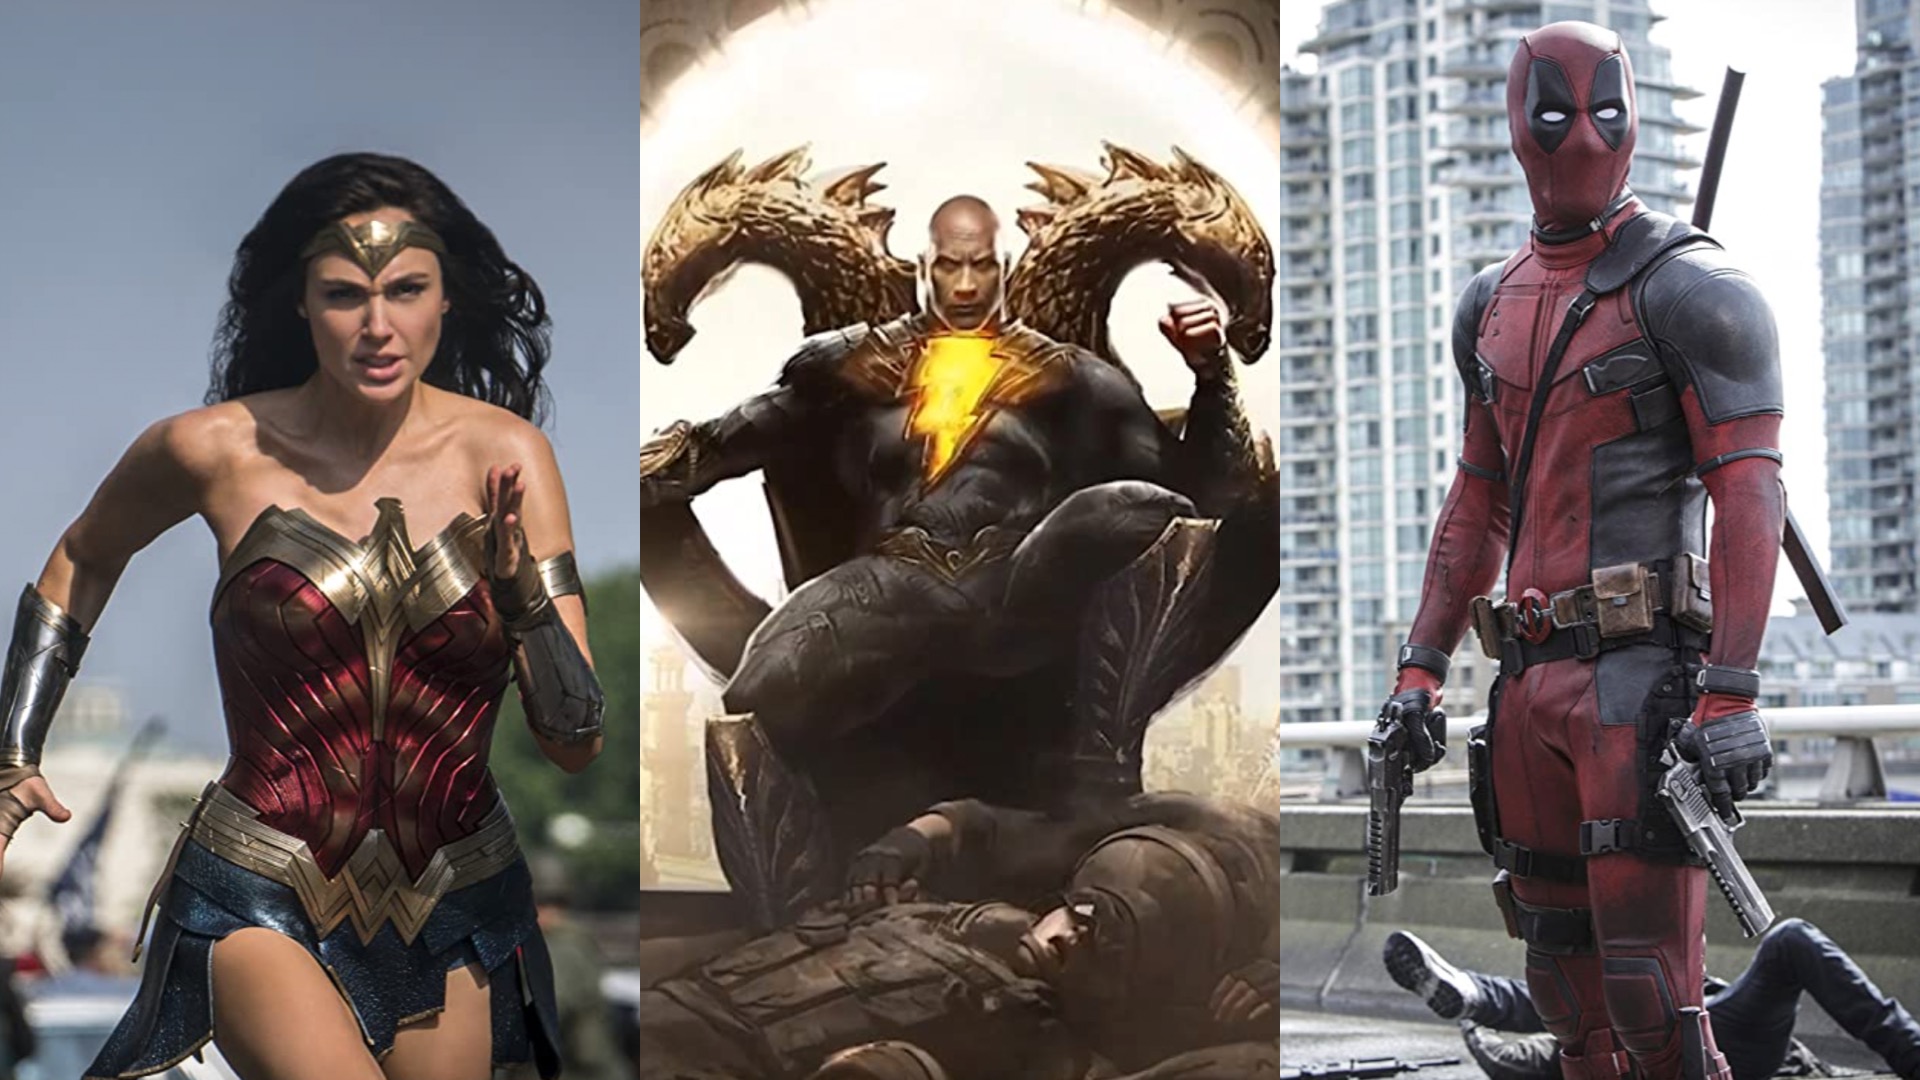 Wonder Woman olarak Gal Gadot, Black Adam olarak Dwayne Johnson ve Deadpool olarak Ryan Reynolds